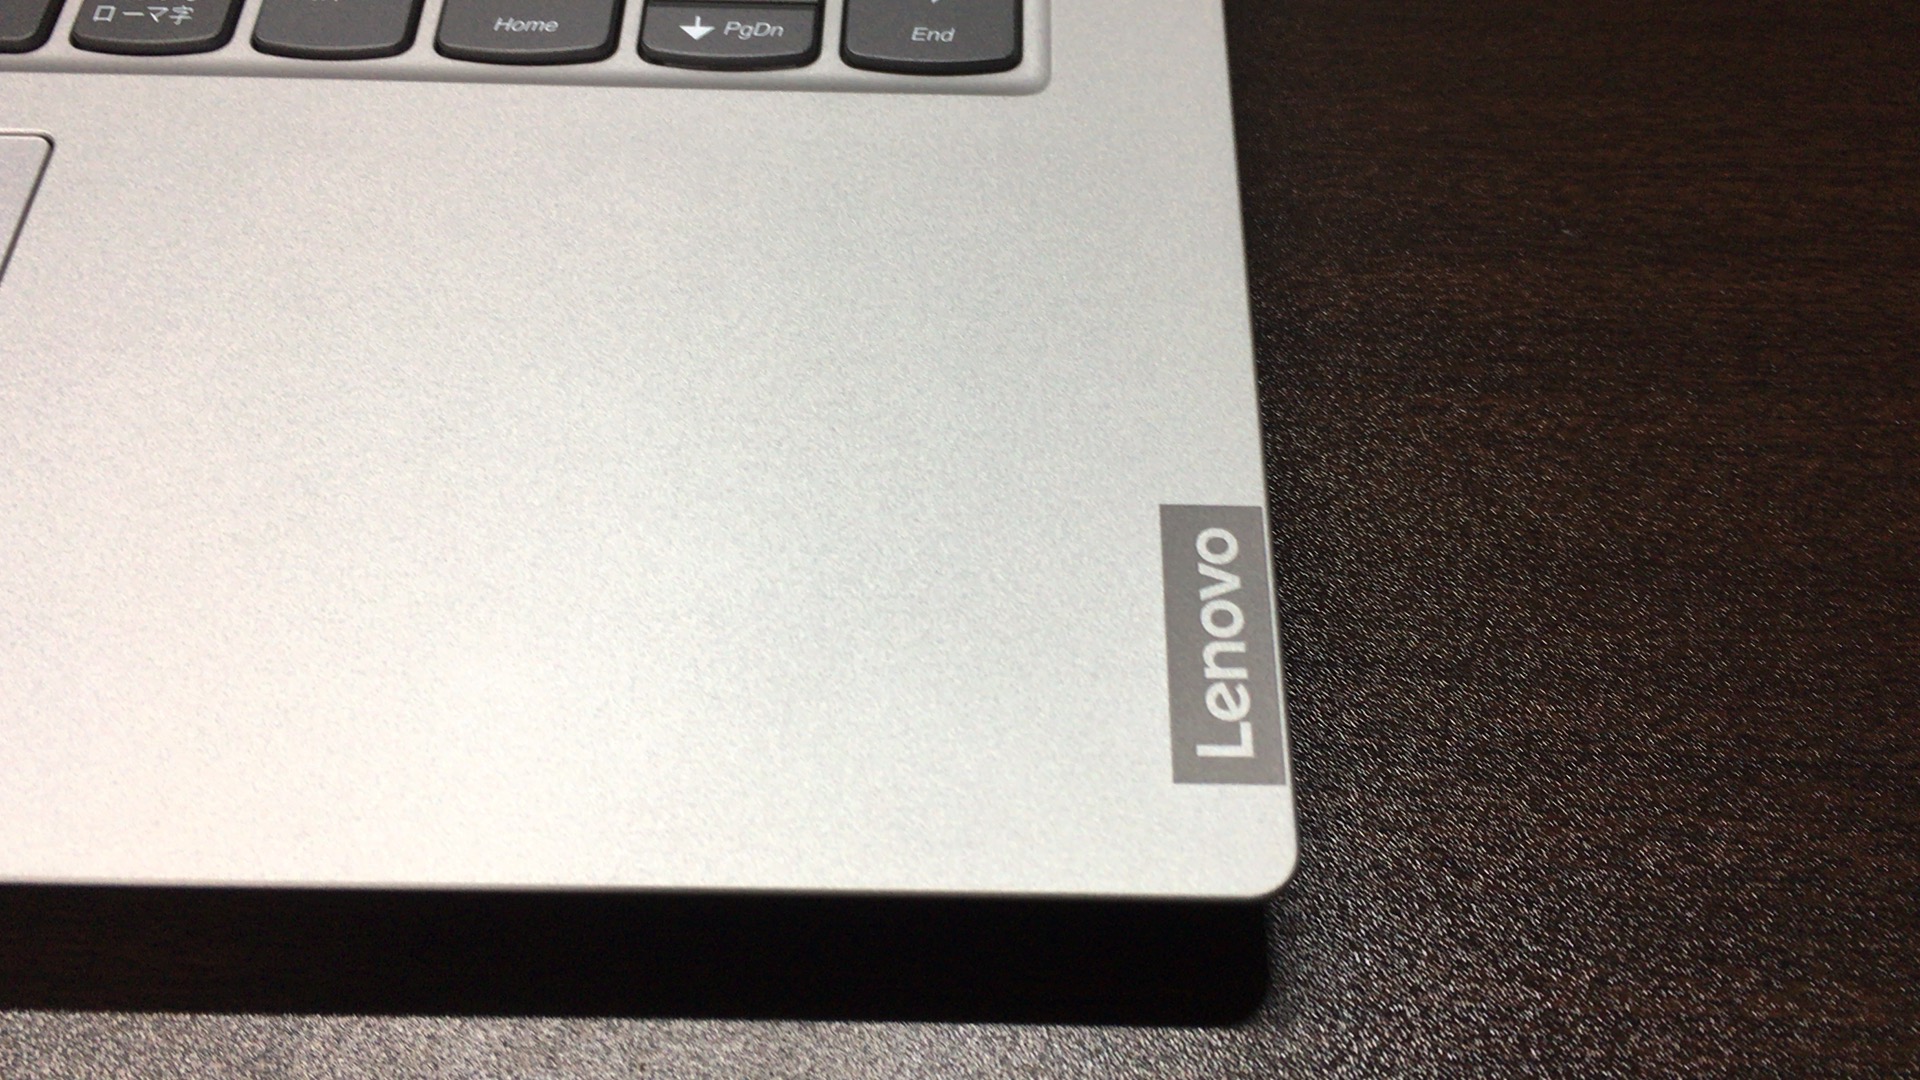 パソコンを新調してみた。Lenovo IdeaPad S340 – プラチナグレー | か ...